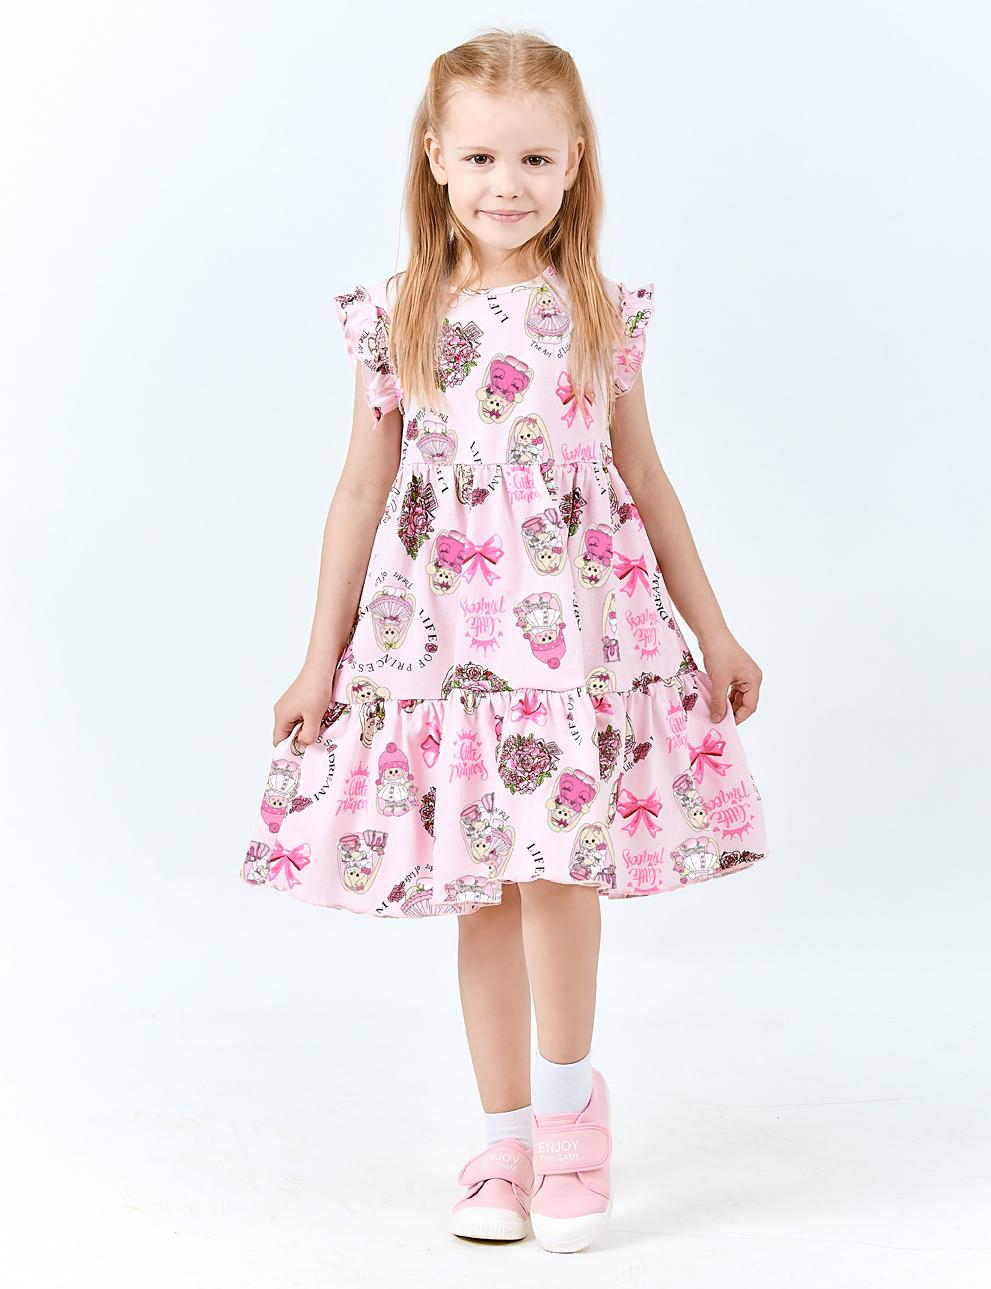 Платье для девочки KETMIN СОЛНЫШКО цв.Зайчики Розовый